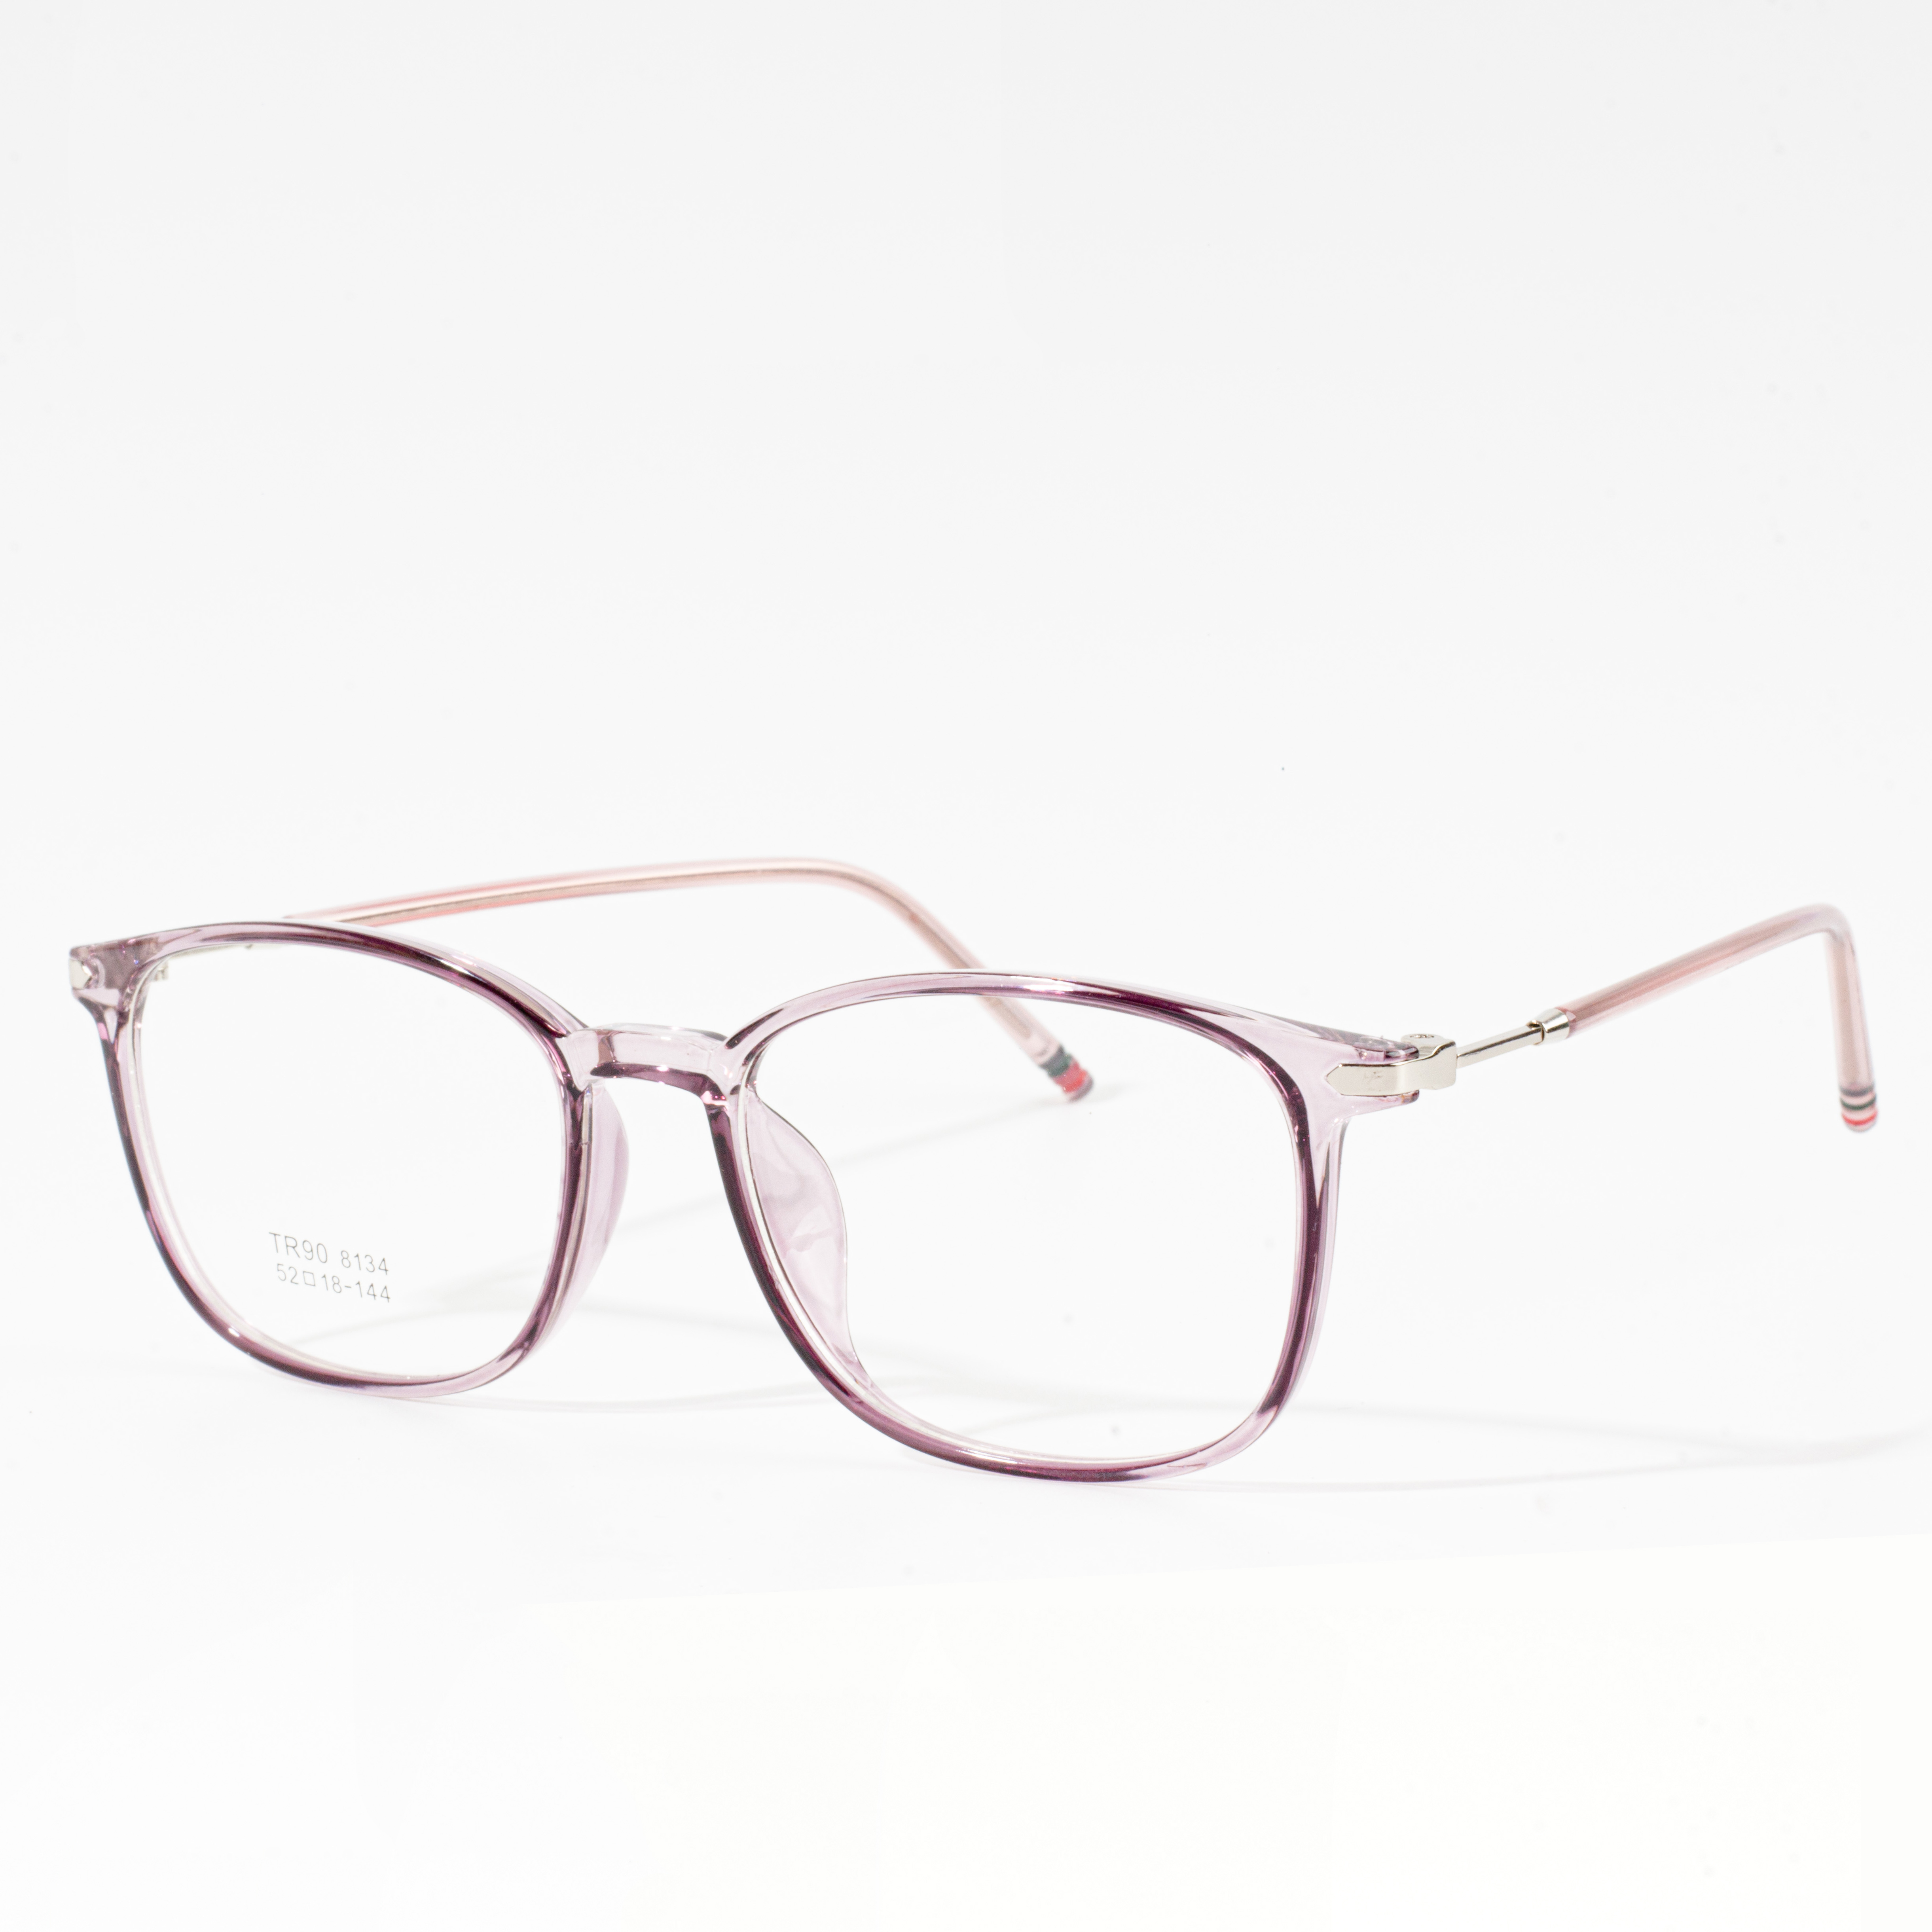 frames for eyeglasses for women